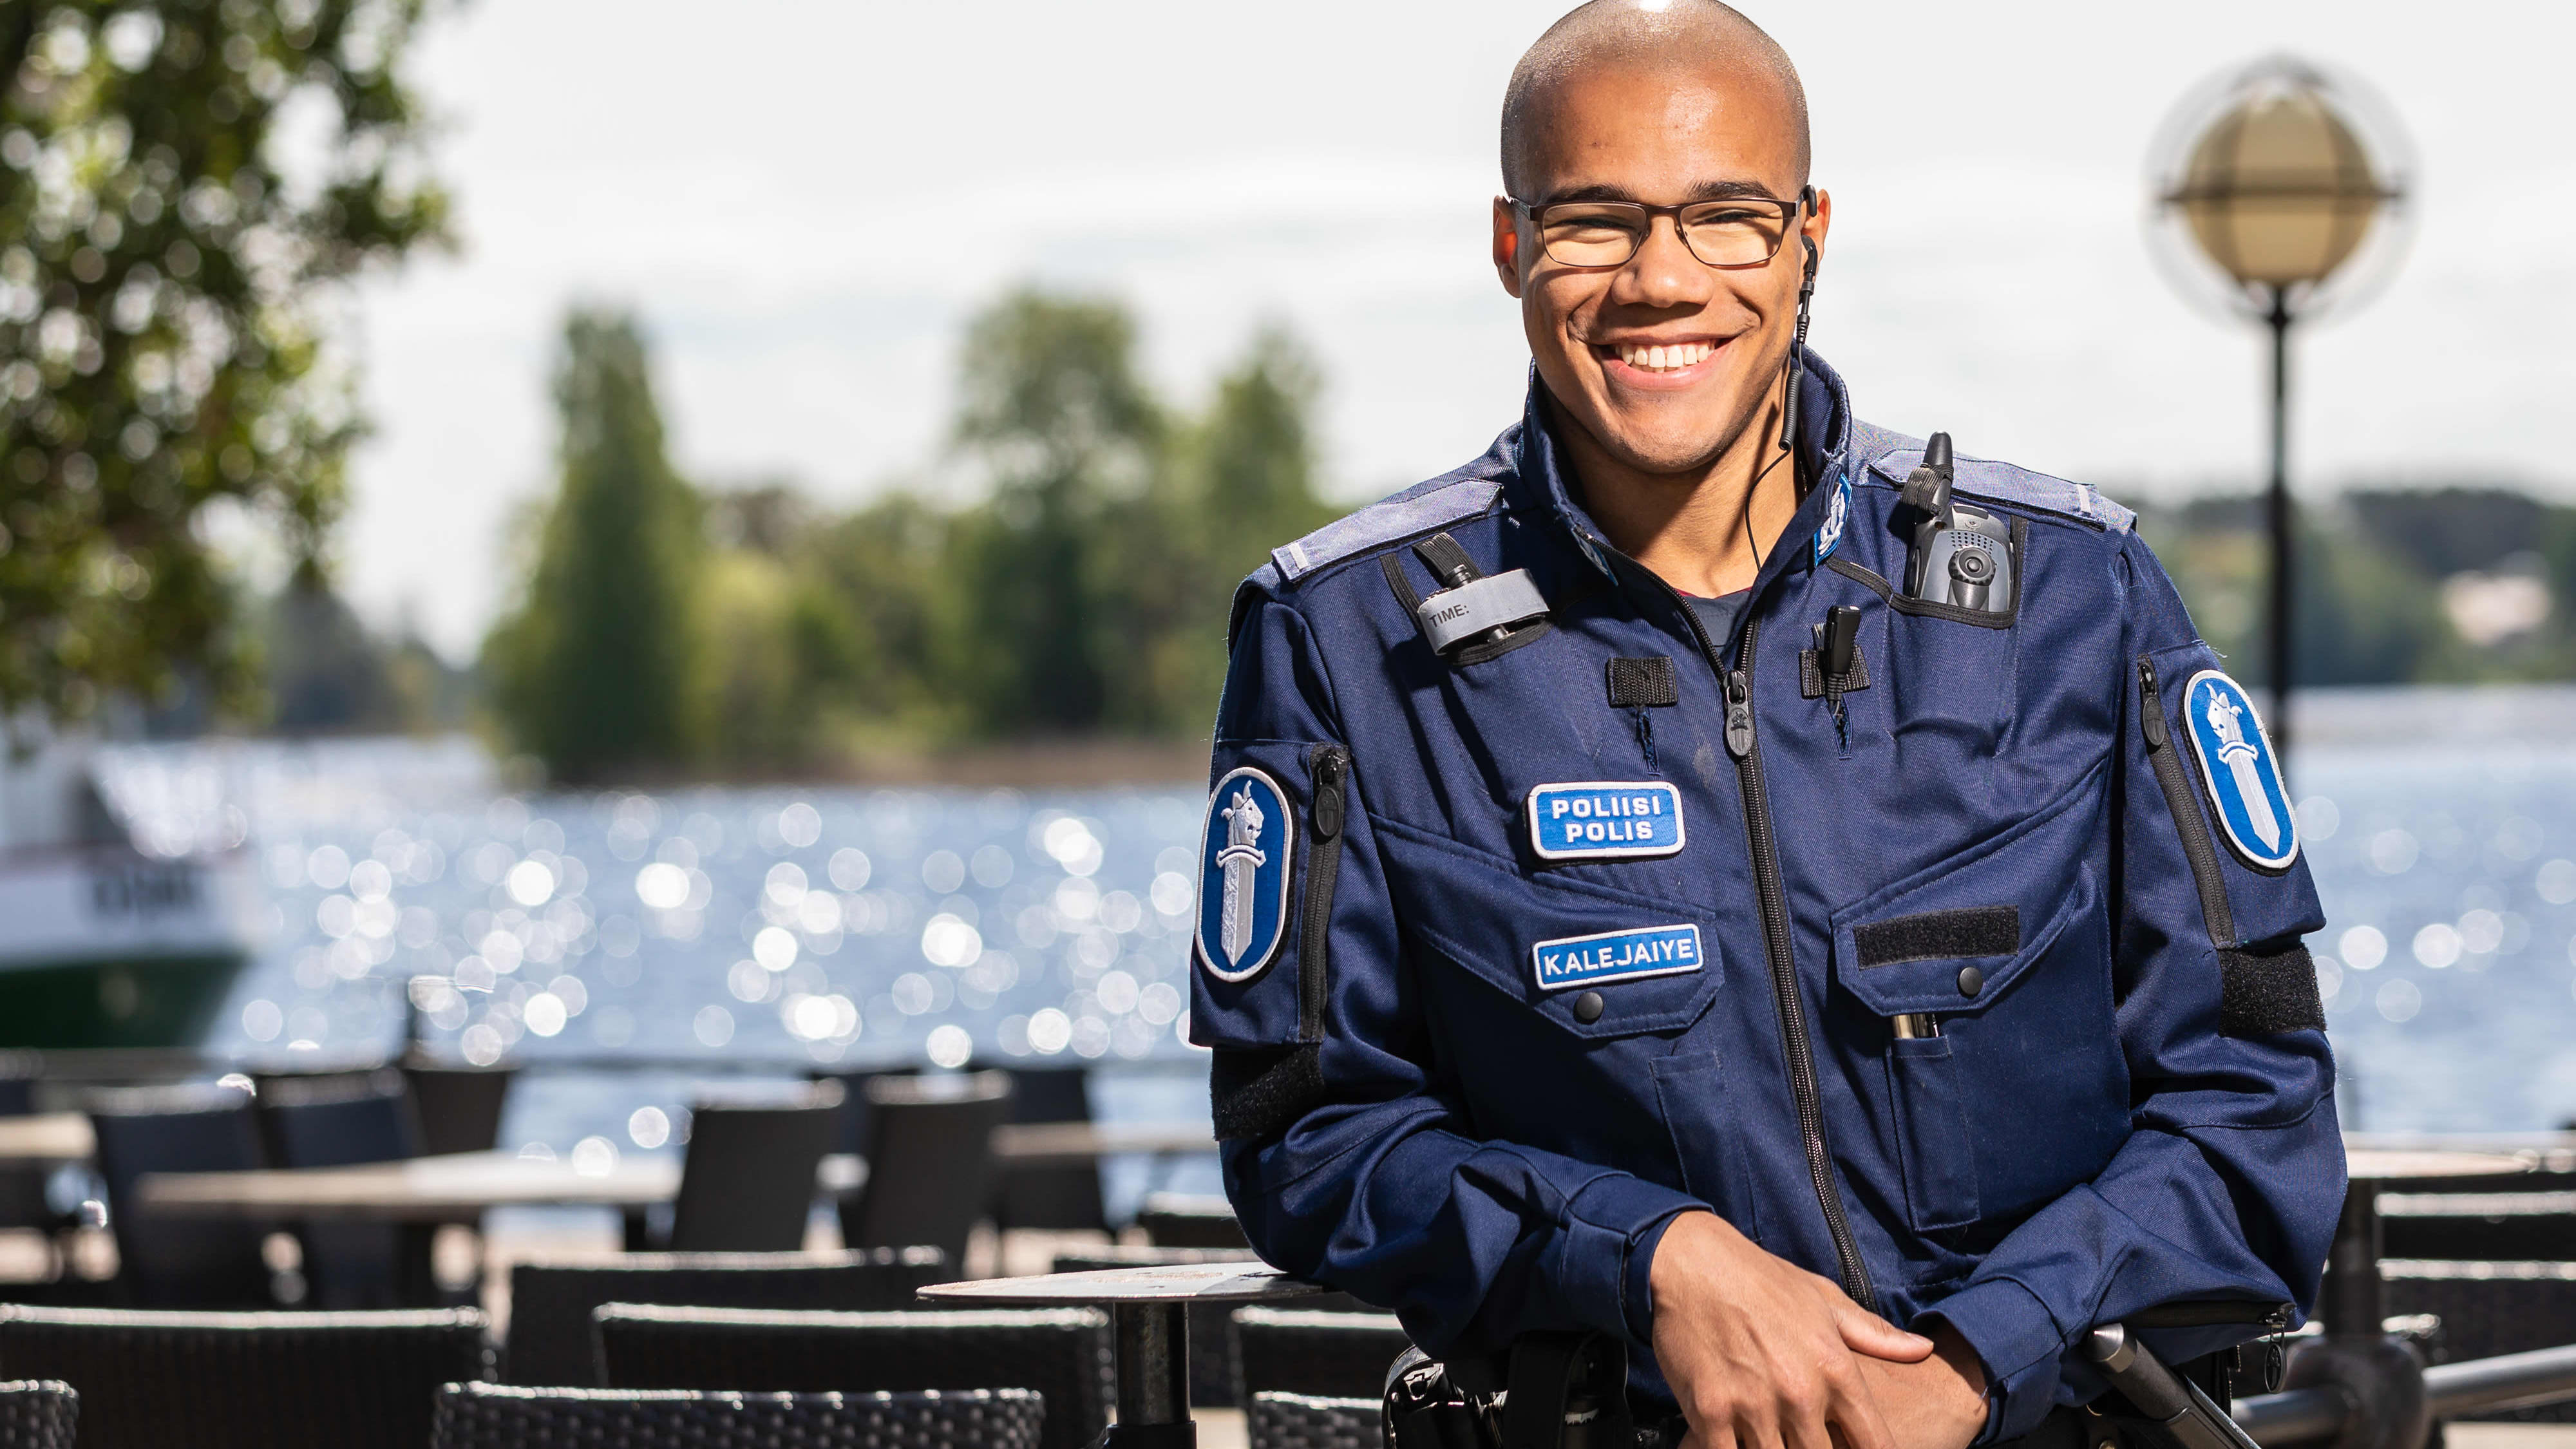 23-vuotias poliisi Daniel Kalejaiye Kuopiossa.